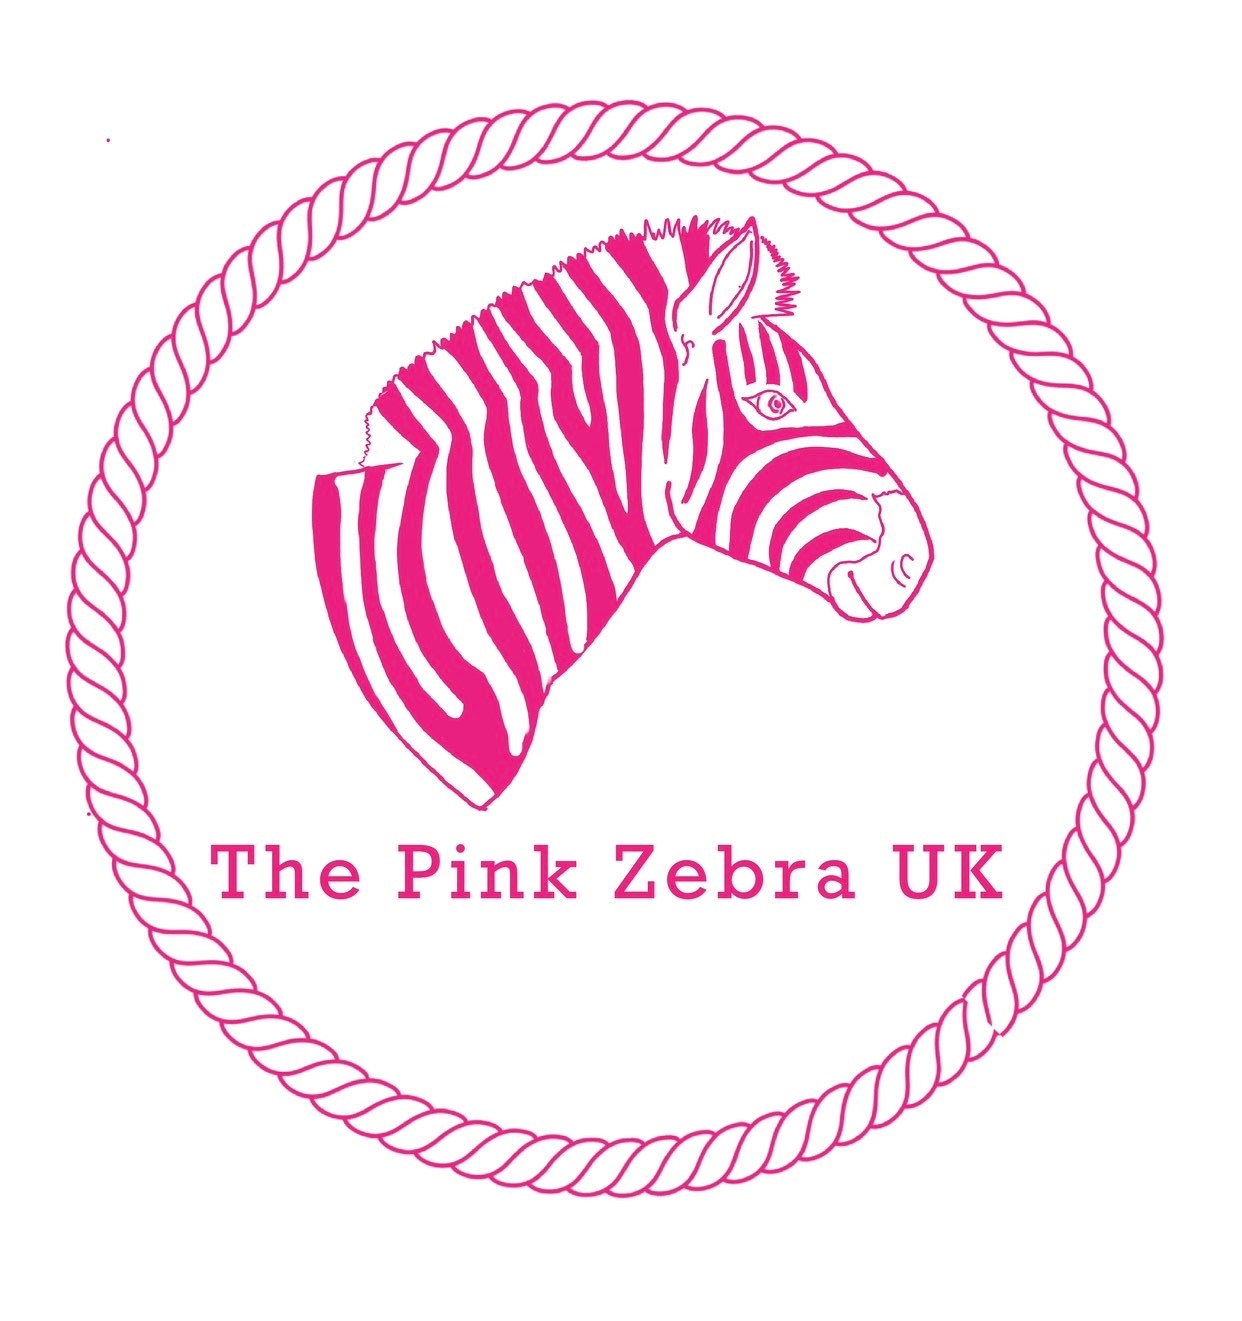 The Pink Zebra UK